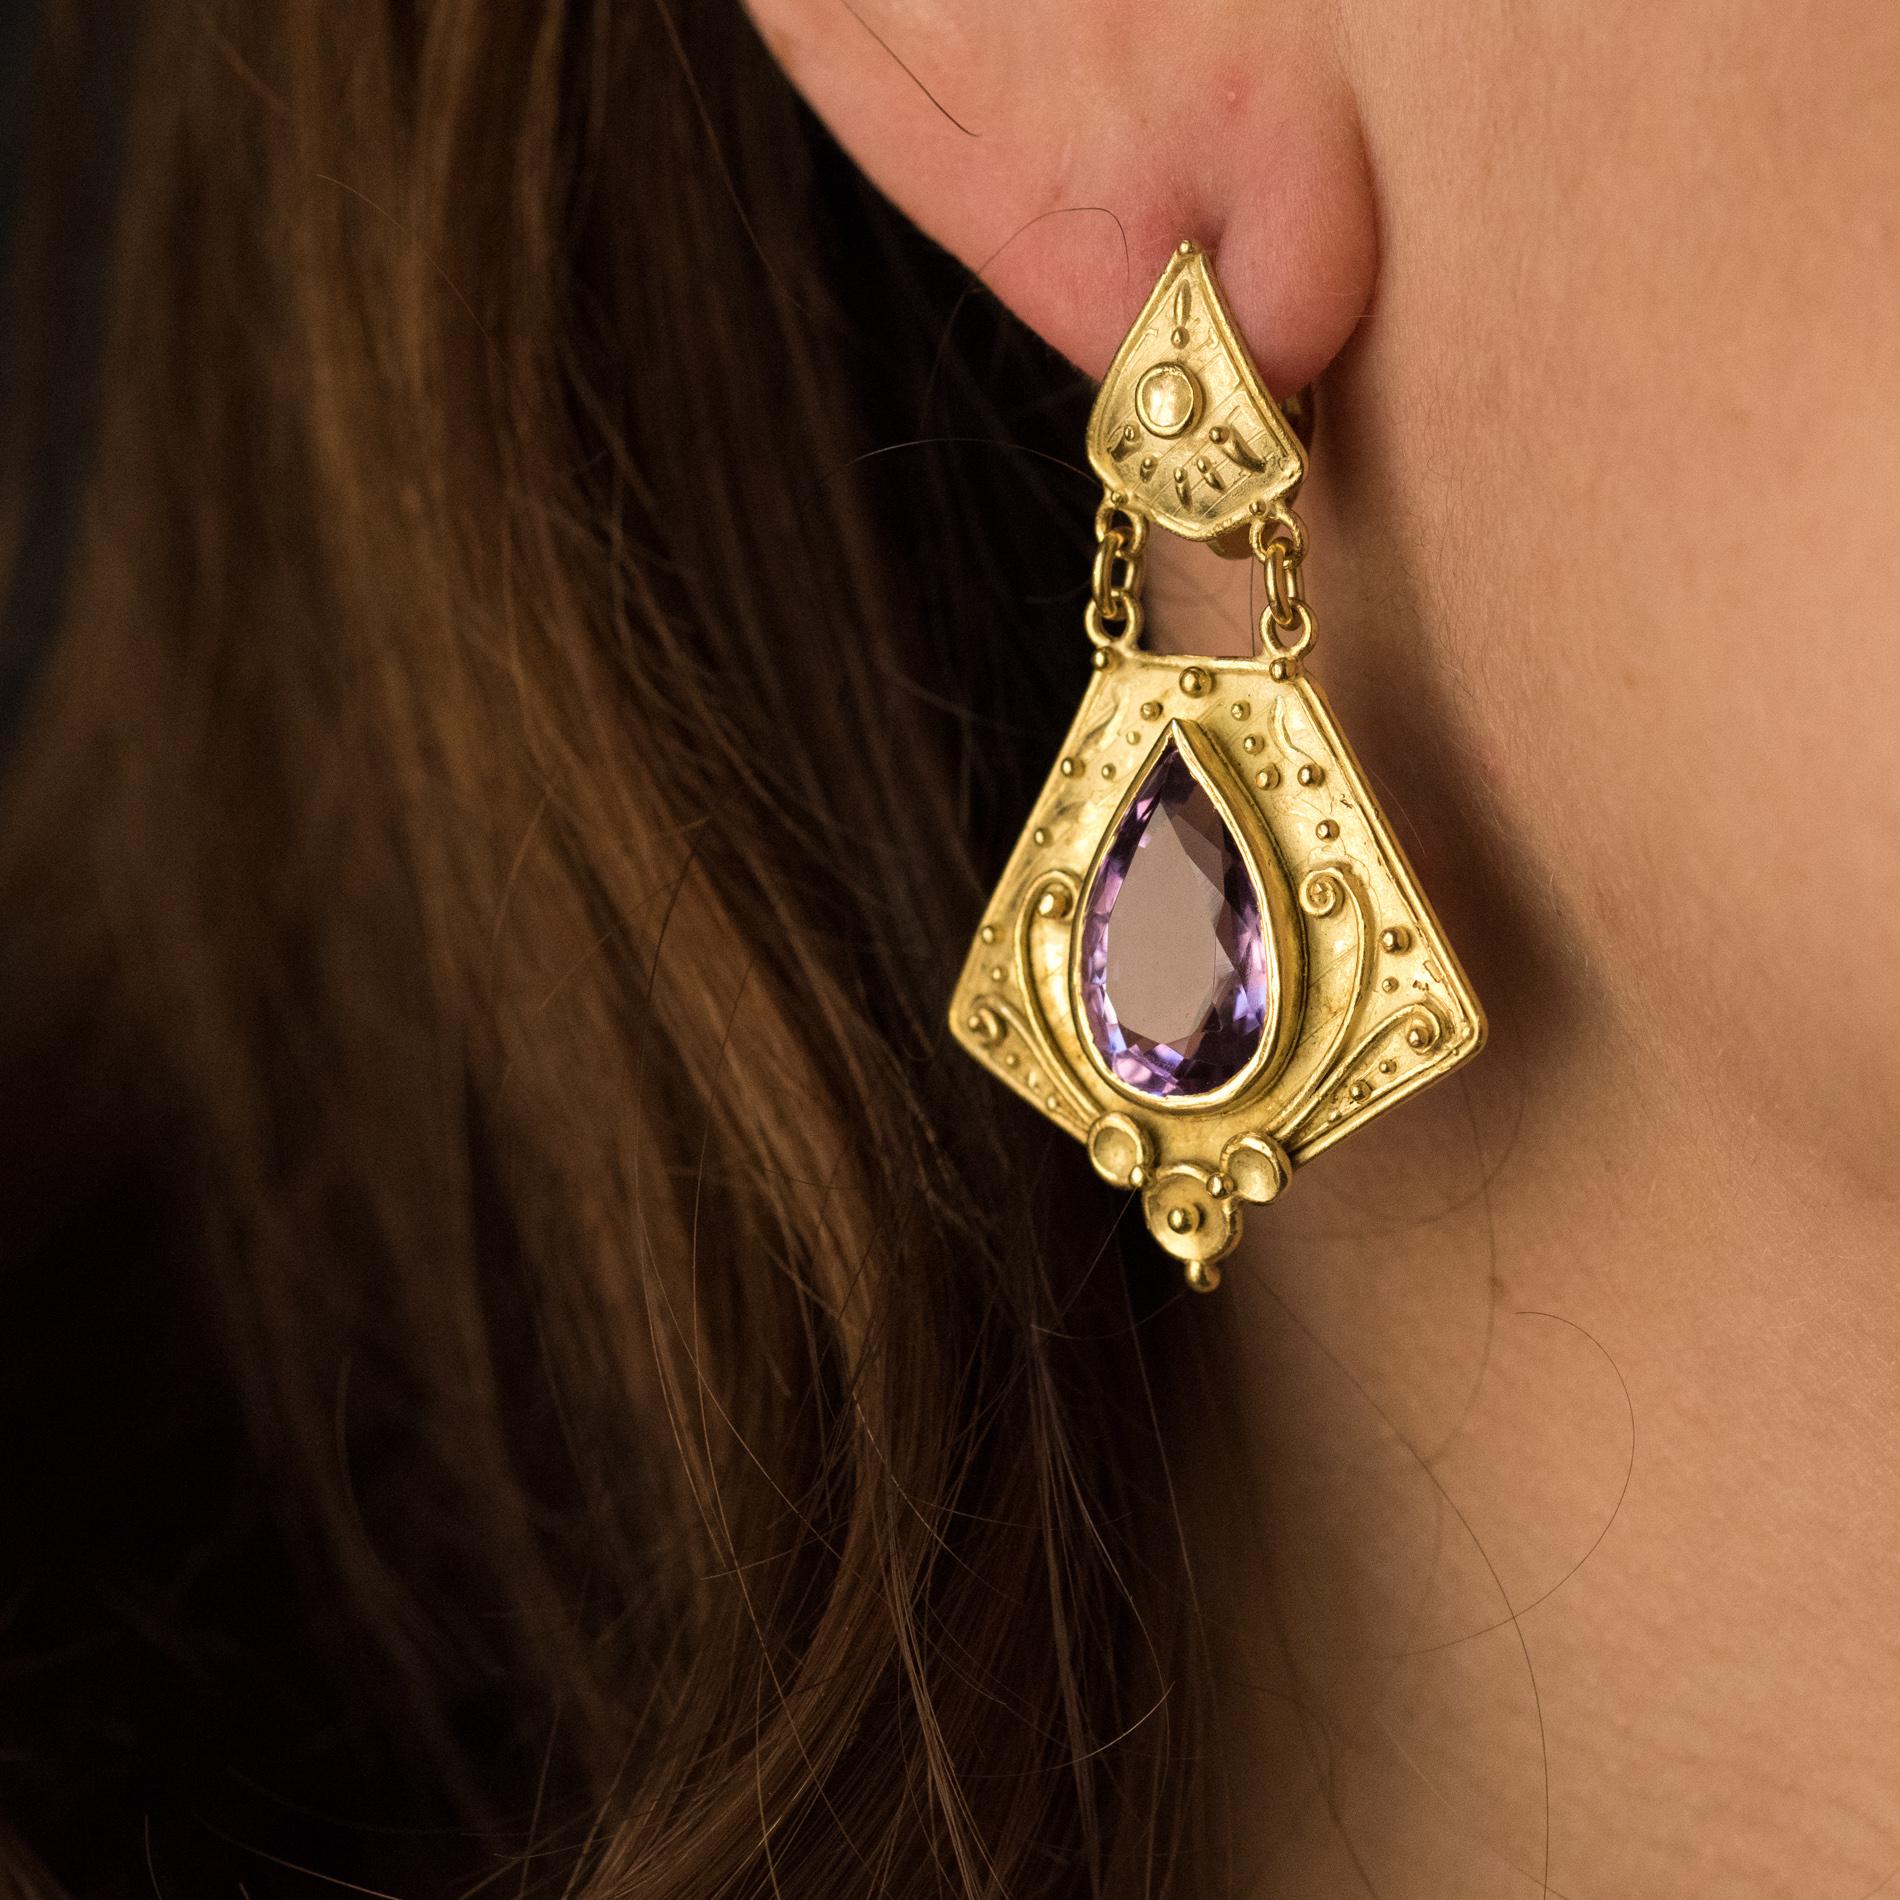 Ohrringe aus 18 Karat Gelbgold.
Diese von etruskischen Schmuckstücken inspirierten Ohrhänger sind mit einem Amethysten im Birnenschliff besetzt, der in eine leicht amatiierte und ziselierte Goldfassung eingefasst ist. Die Schließe ist ein Nagel mit